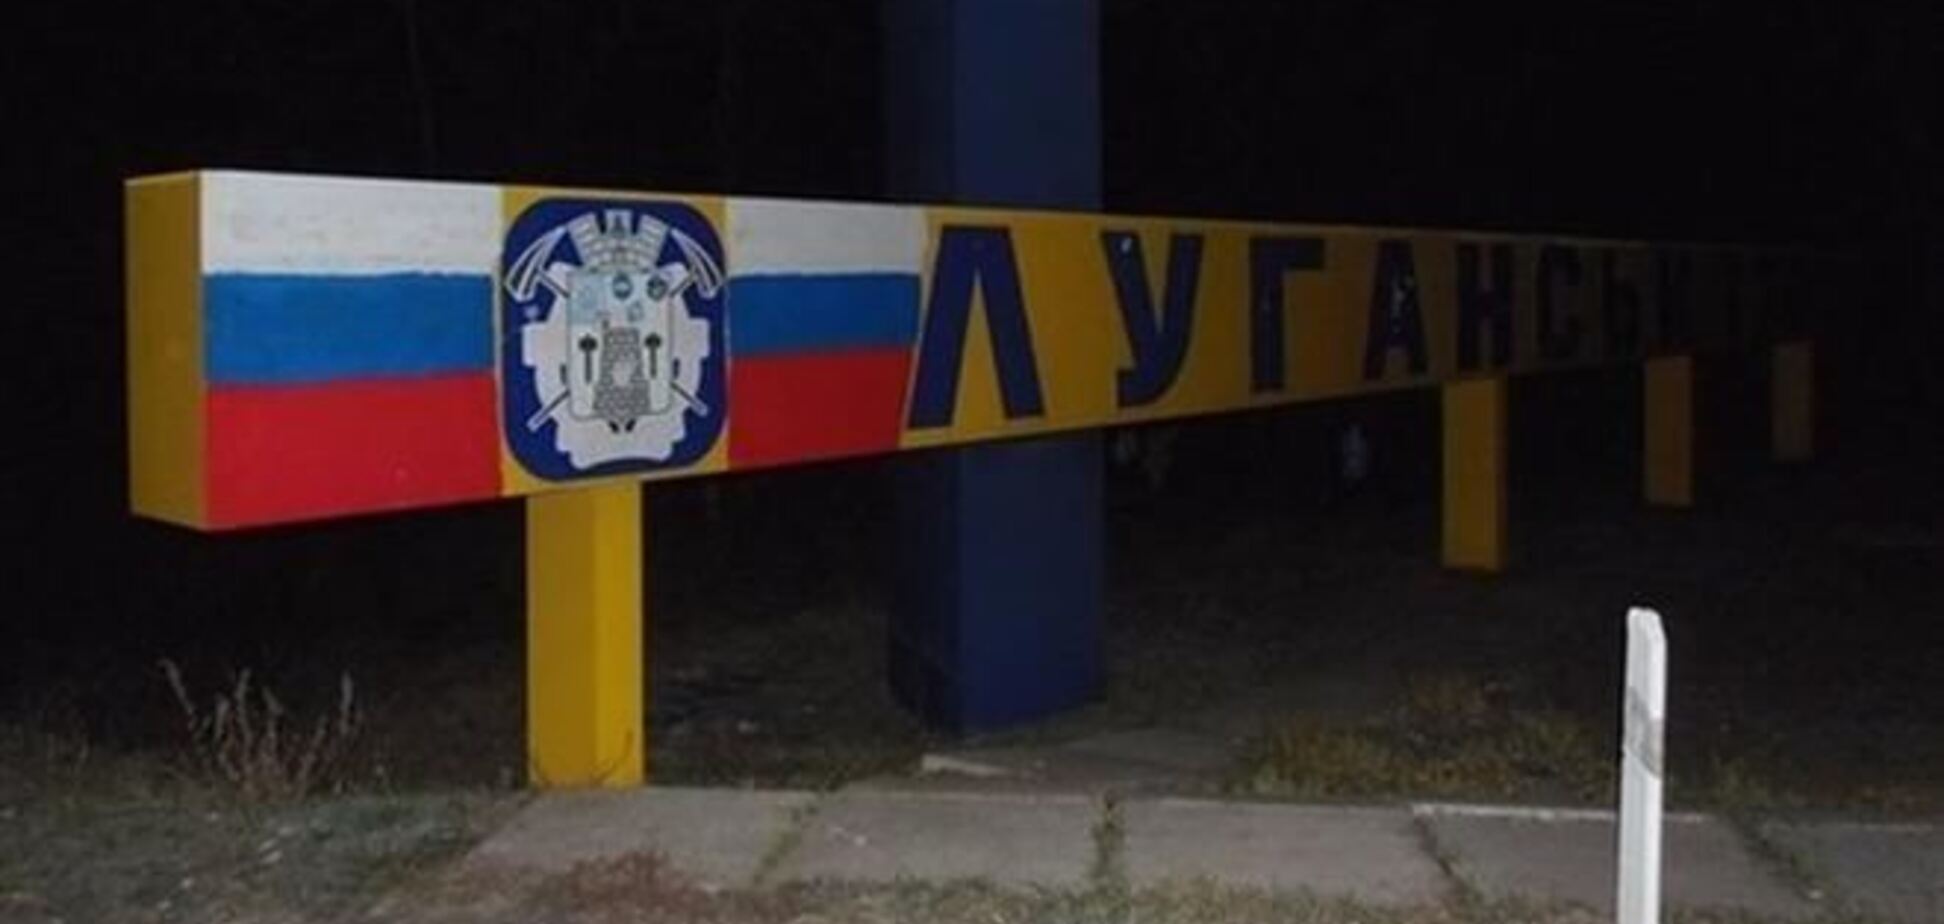 На Луганщині пофарбували стели з назвою міст в кольори прапора РФ